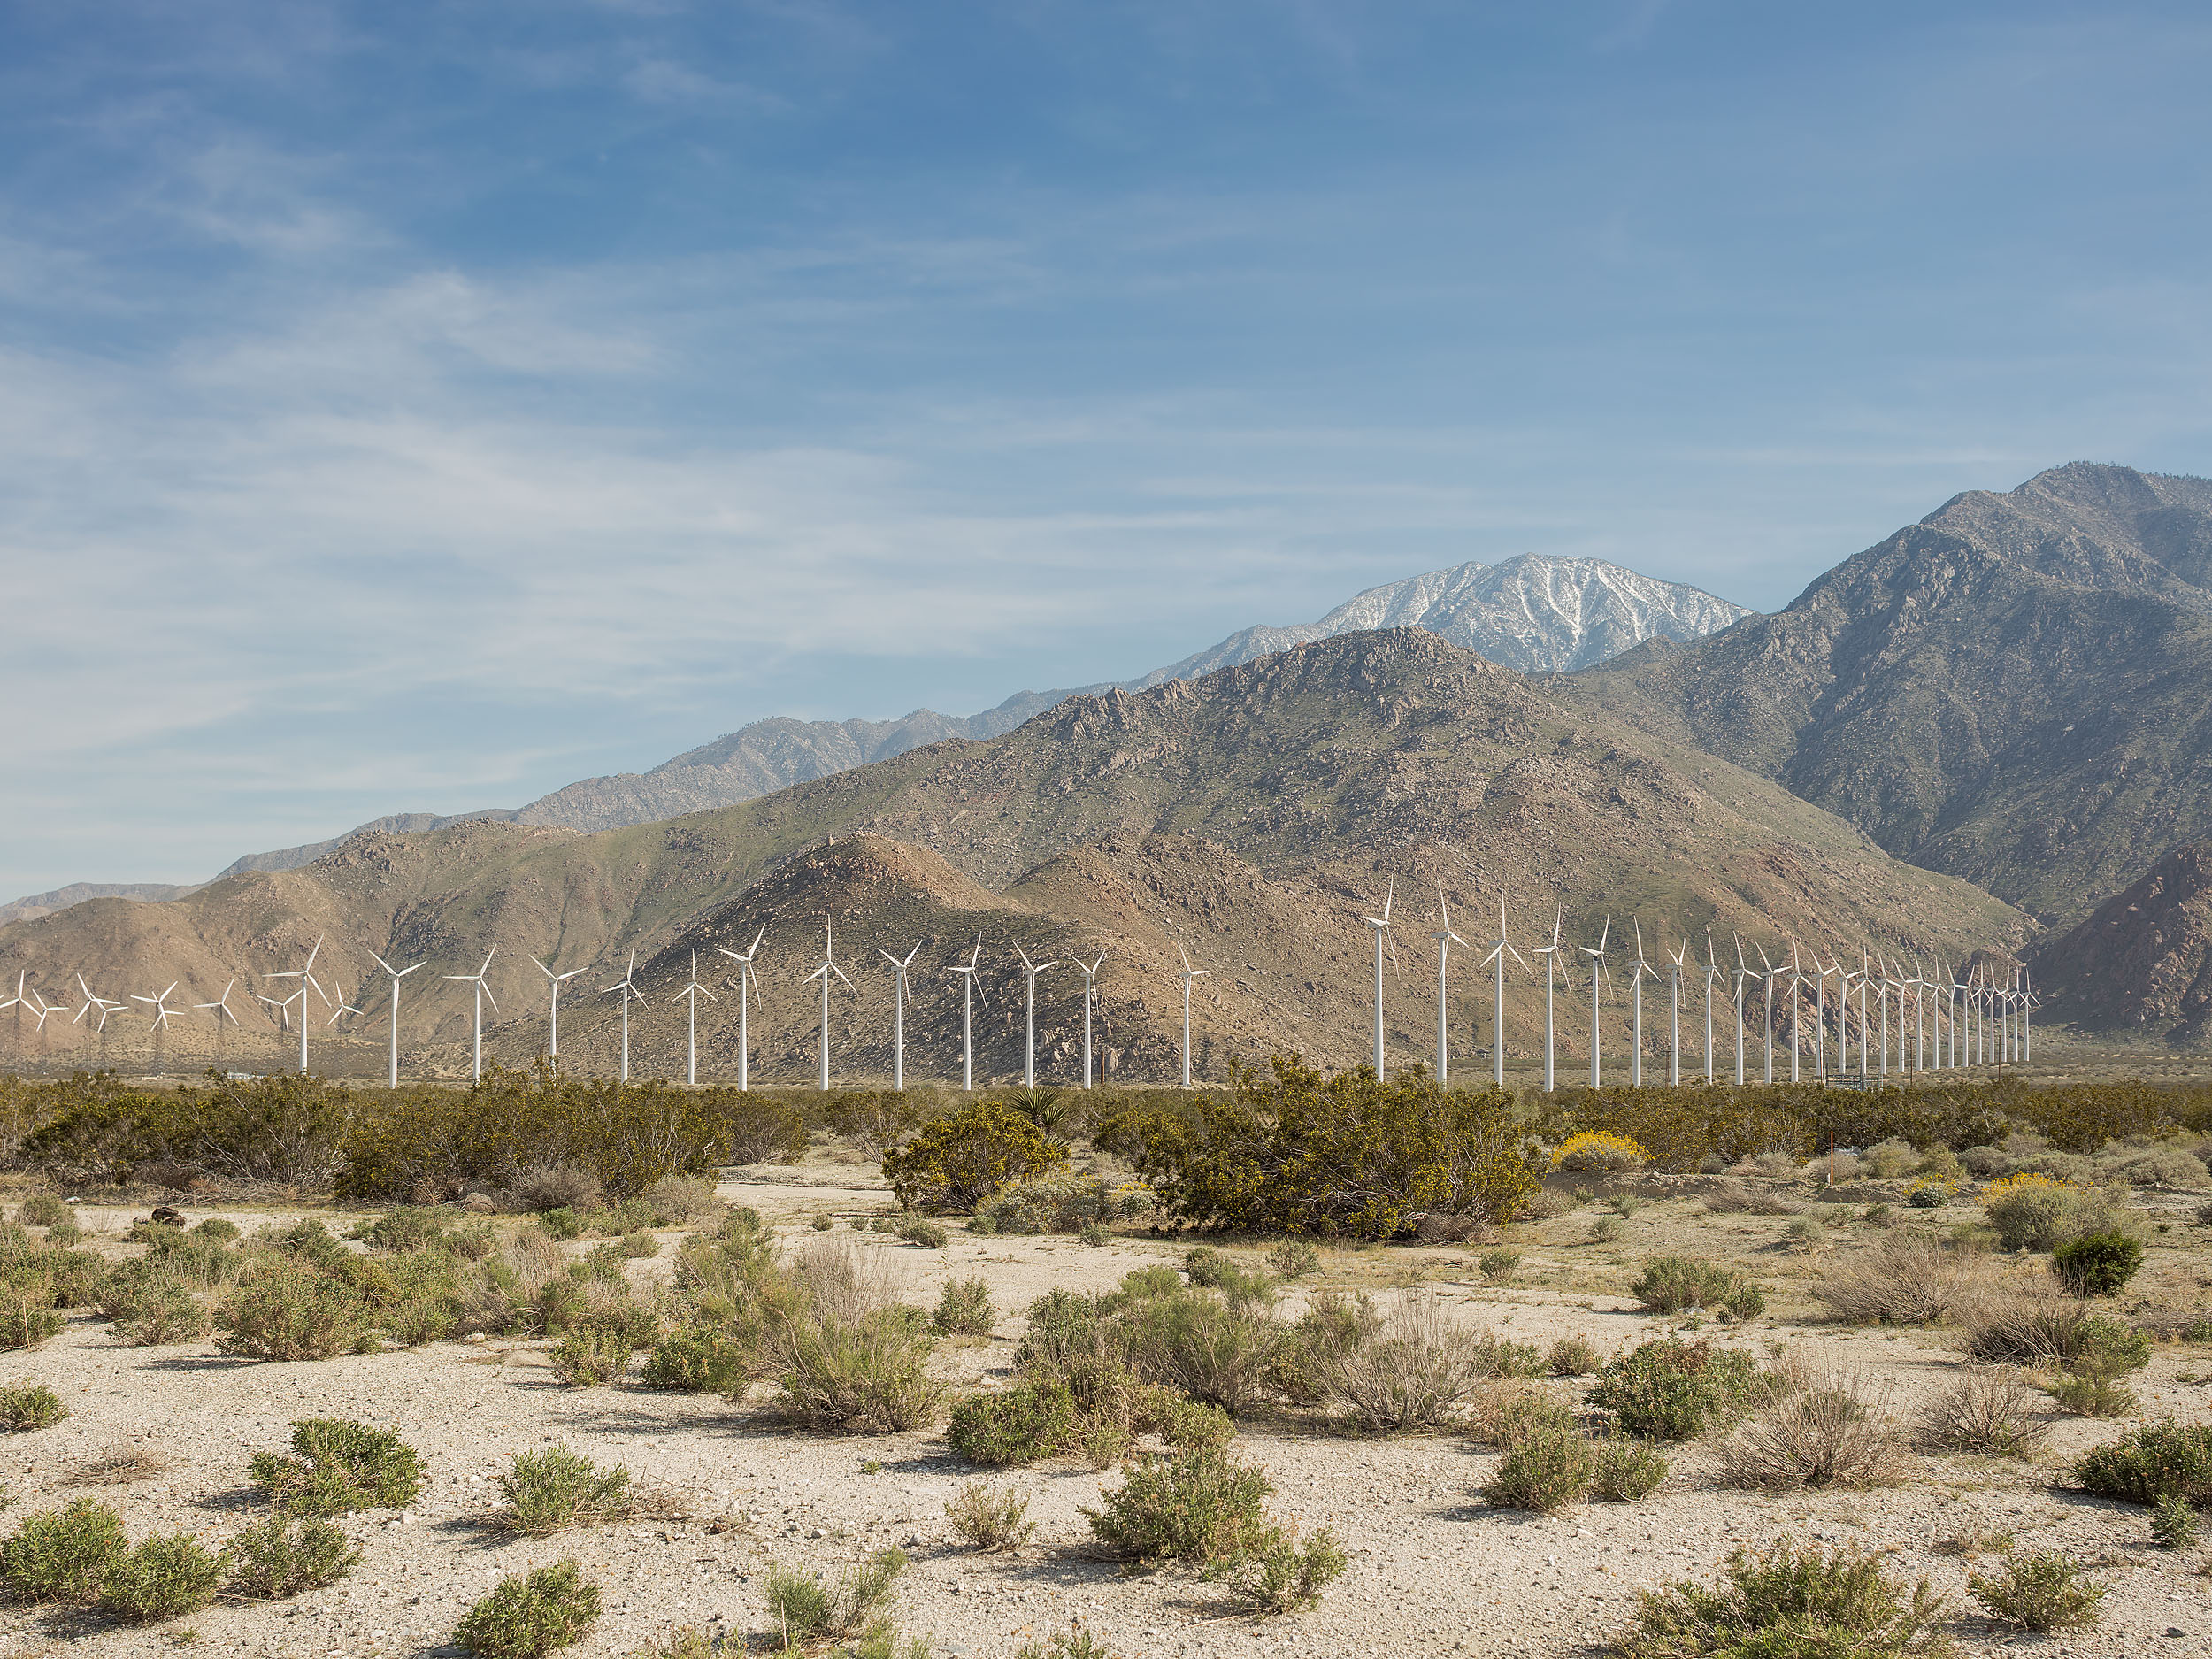 San Gorgonio Pass Wind Farm and San Jacinto Mountains - Whitewater, CA